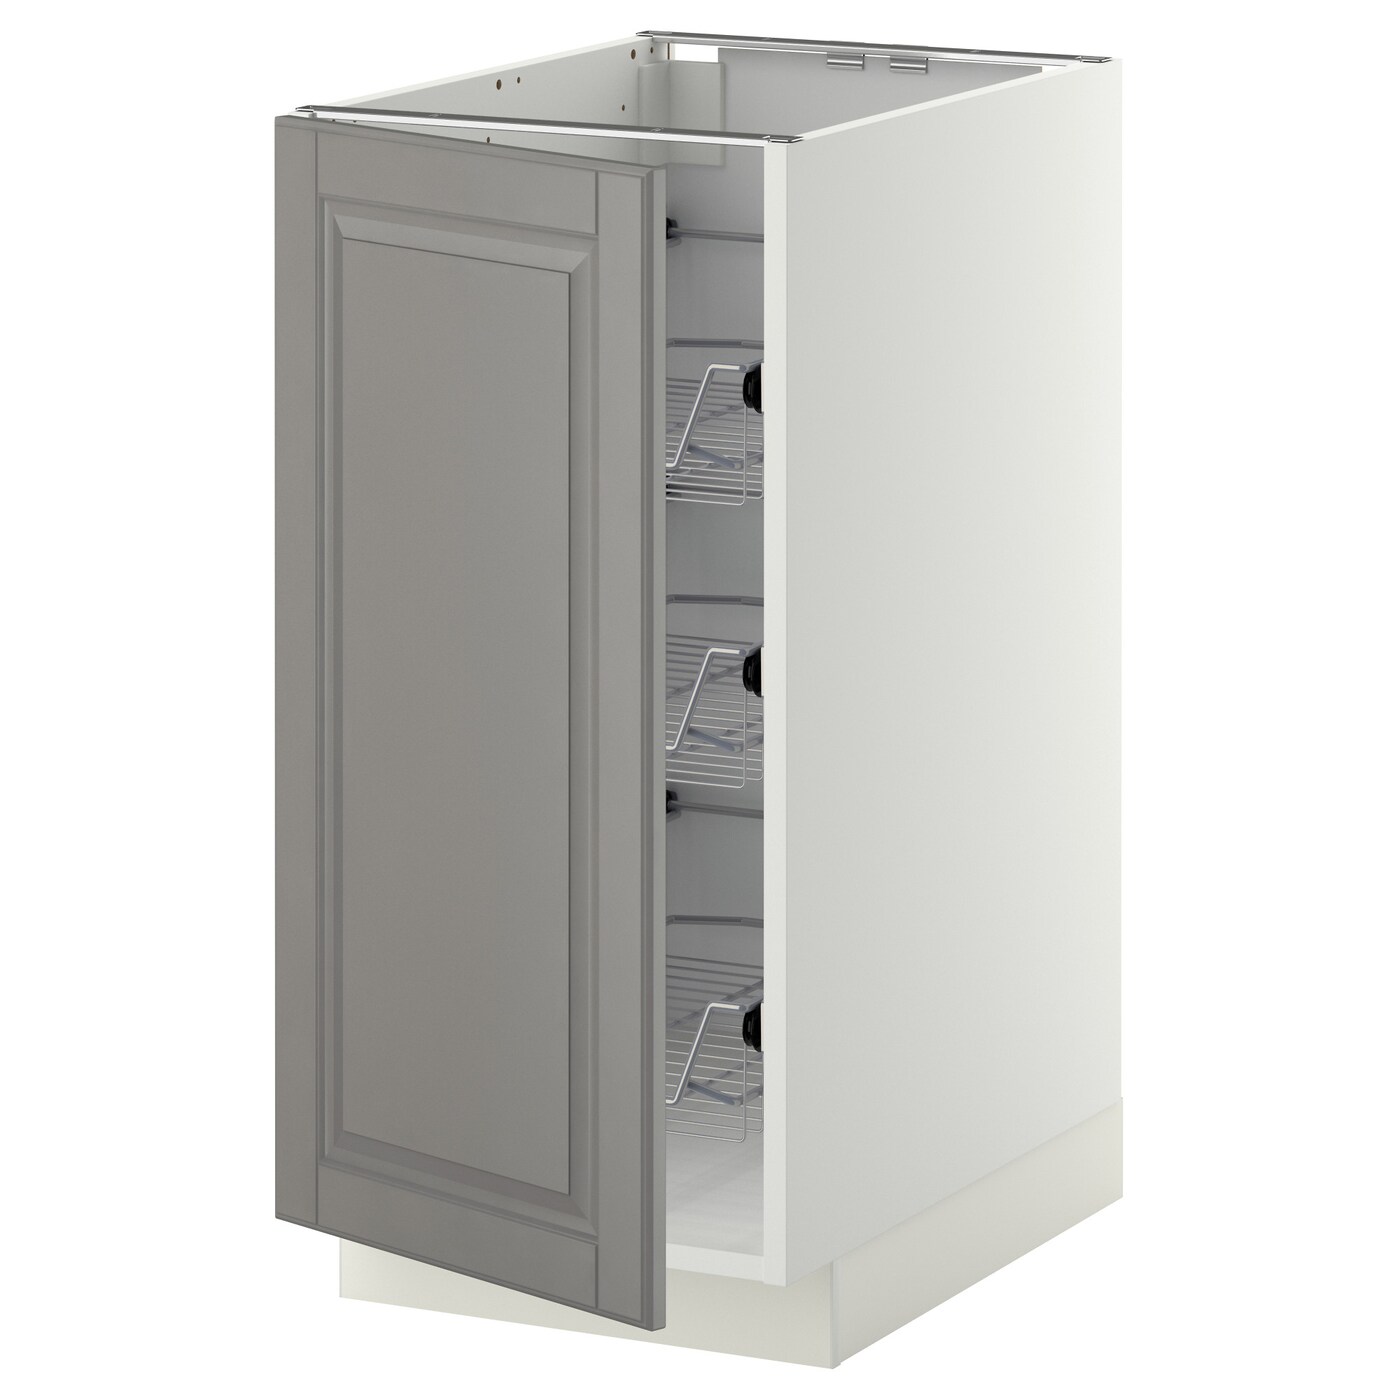 Напольный кухонный шкаф  - IKEA METOD MAXIMERA, 88x62x40см, белый/серый, МЕТОД МАКСИМЕРА ИКЕА